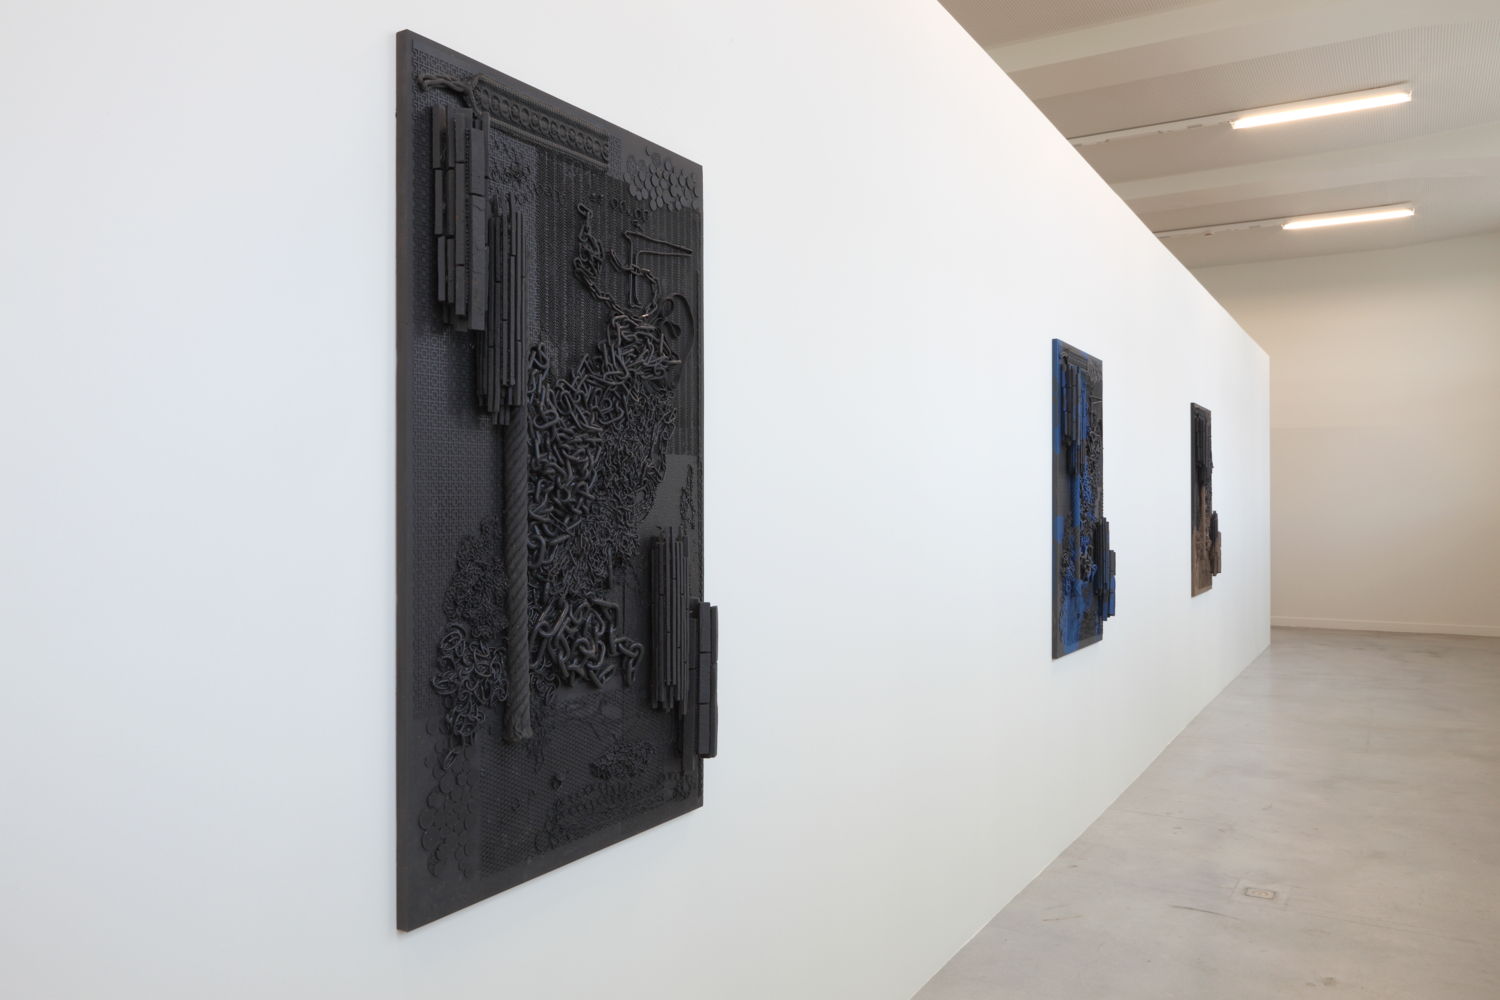 Isabelle Cornaro, Orgon Doors I, 2013
© de kunstenaar & M-Museum Leuven / Dirk Pauwels
